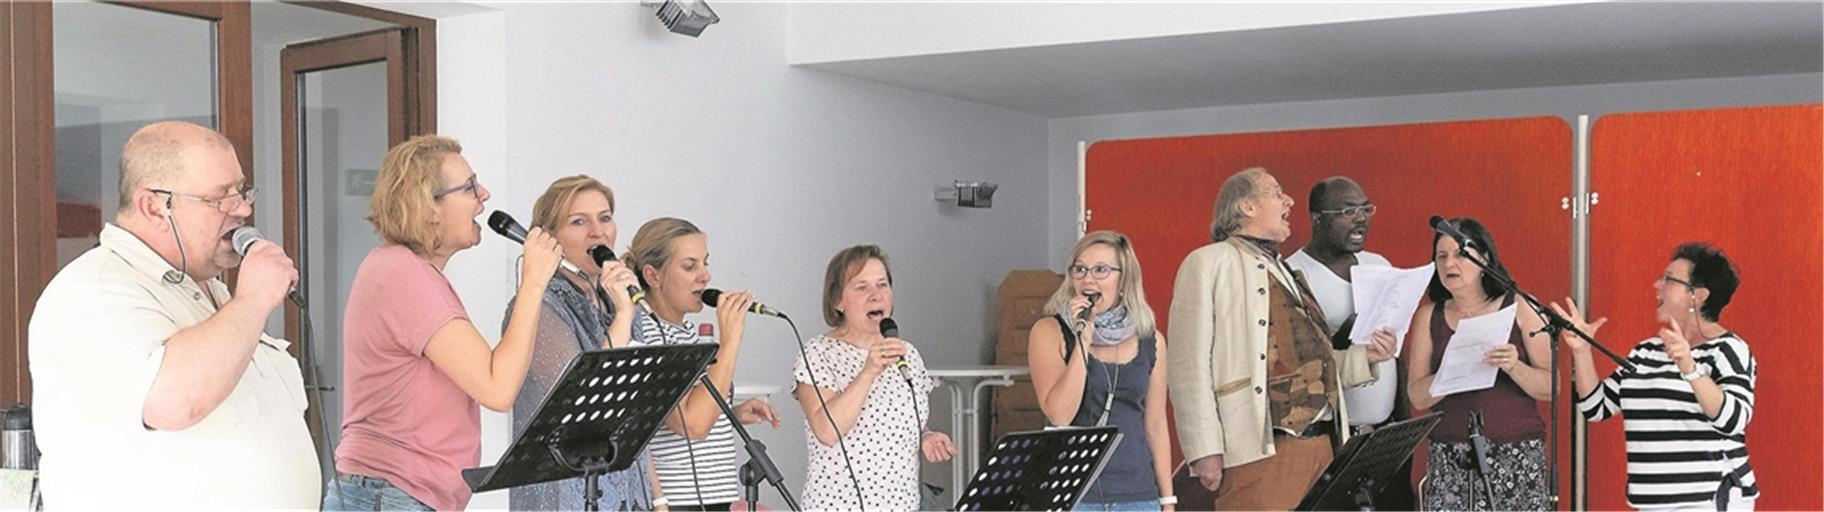 Bei der Probe für den Weltmissionssonntag mit Iwona Kolodziejczyk (rechts), Bandmitgliedern und Gästen wird die Freude am gemeinsamen Singen greifbar. Fotos: J. Fiedler